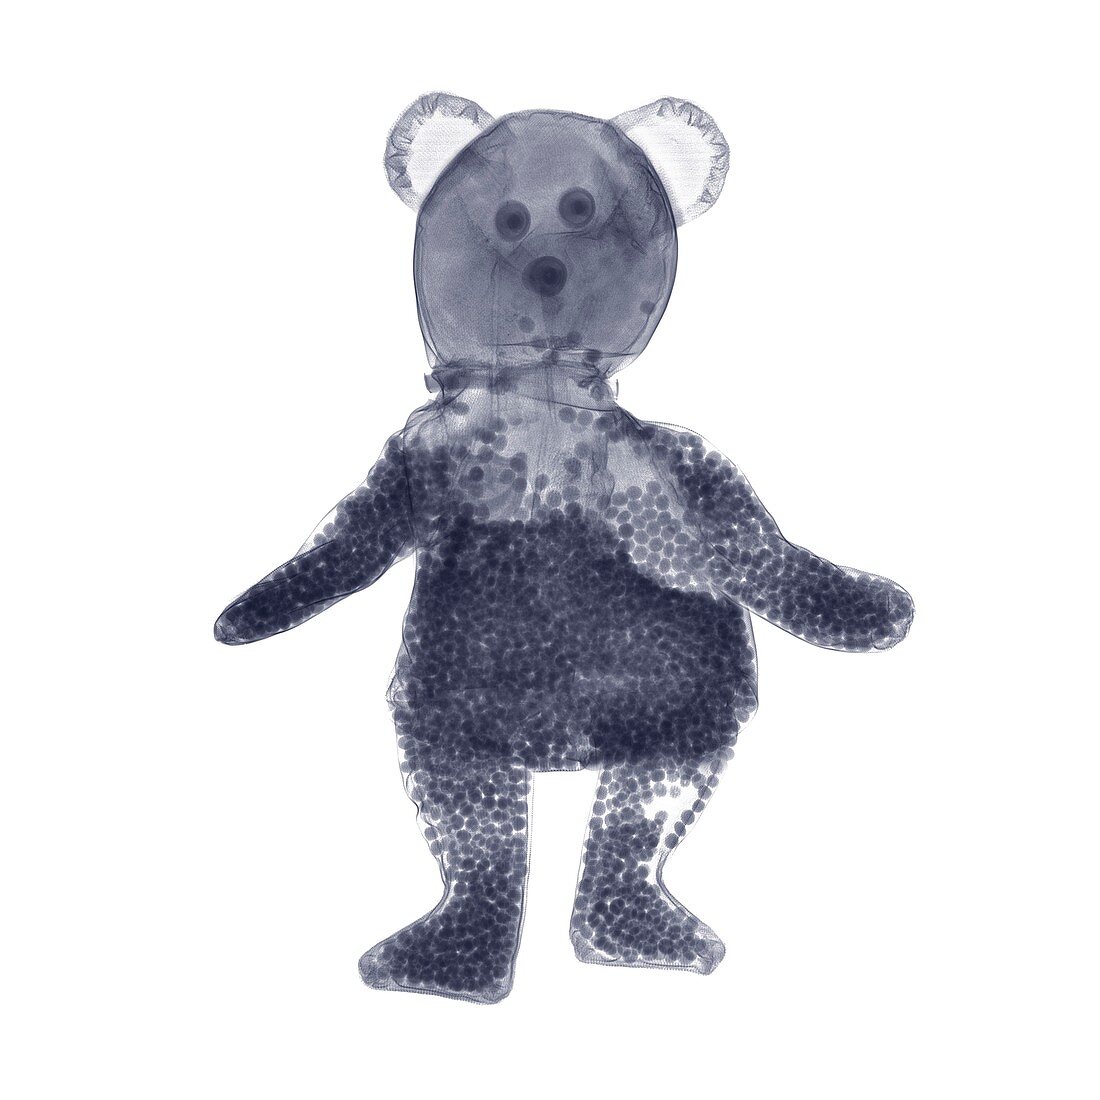 Beanie teddy bear, X-ray